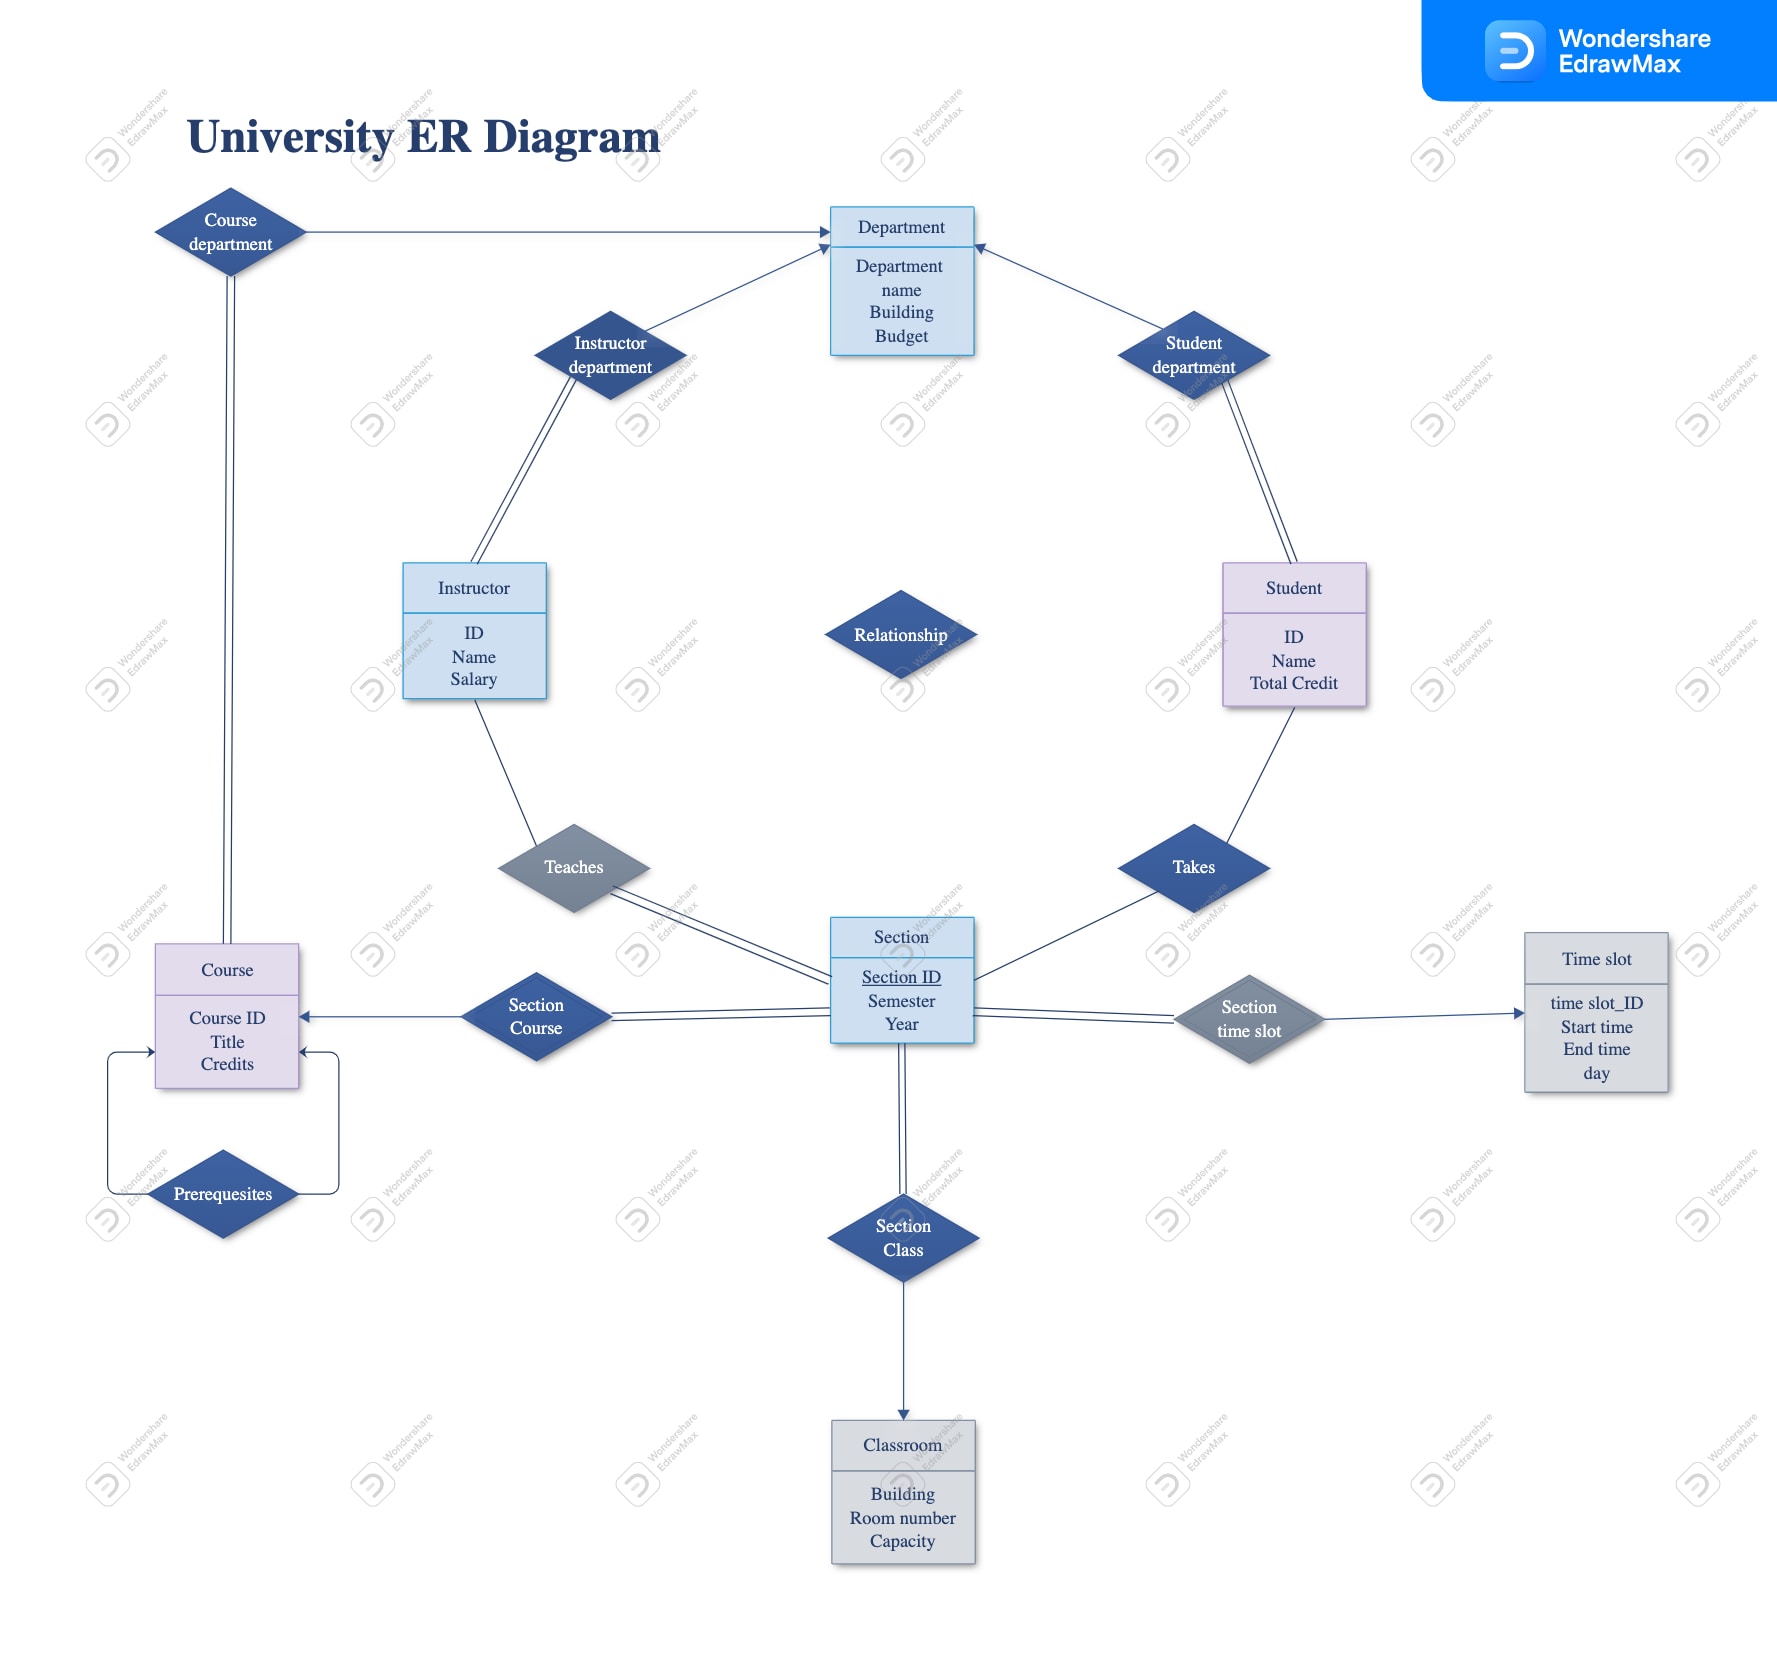 University ER Diagram